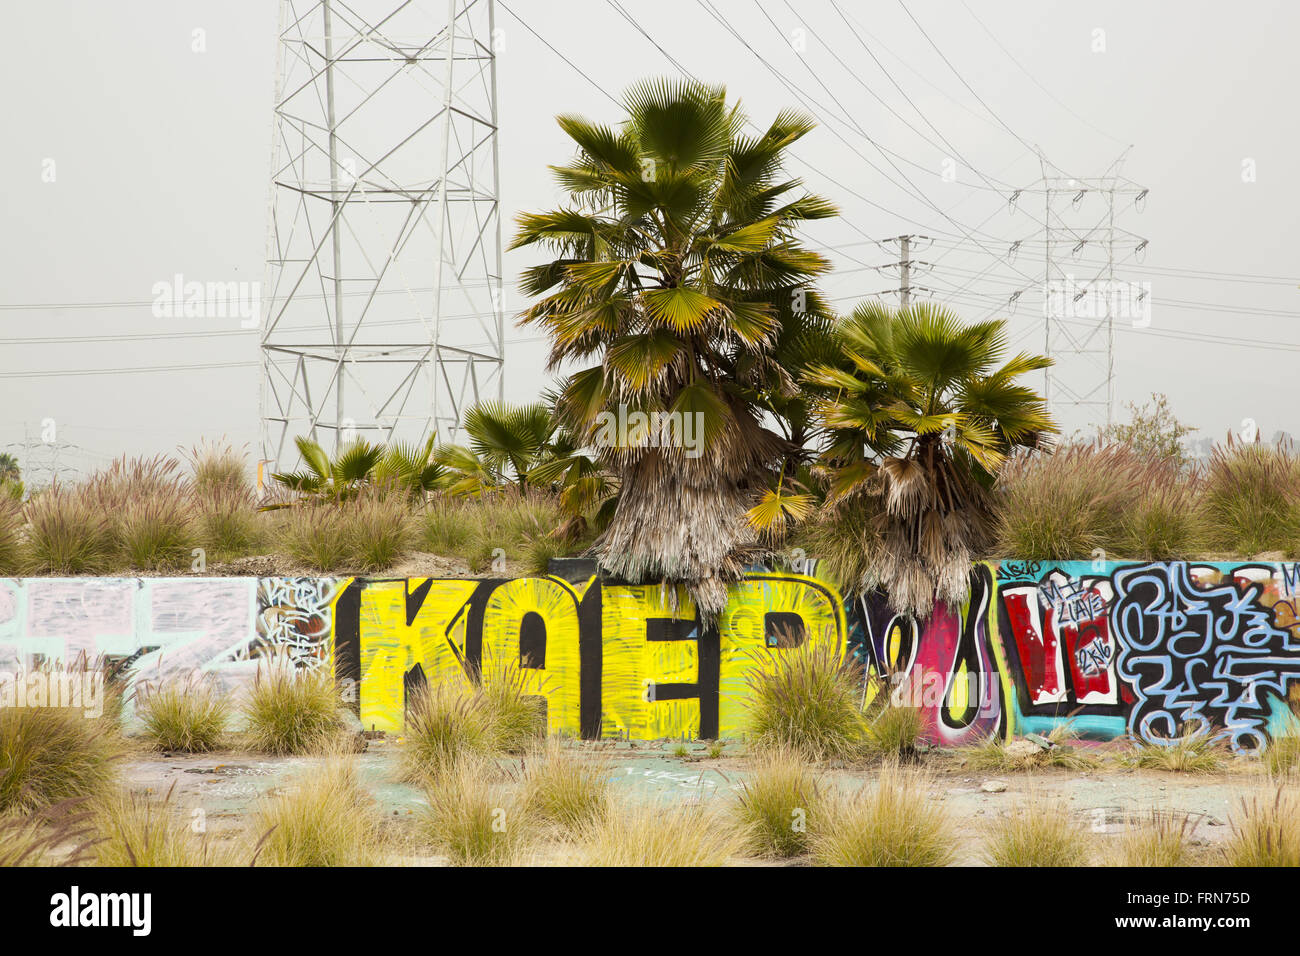 Le Graffiti le long de la Los Angeles River, Glendale, Californie, USA Banque D'Images